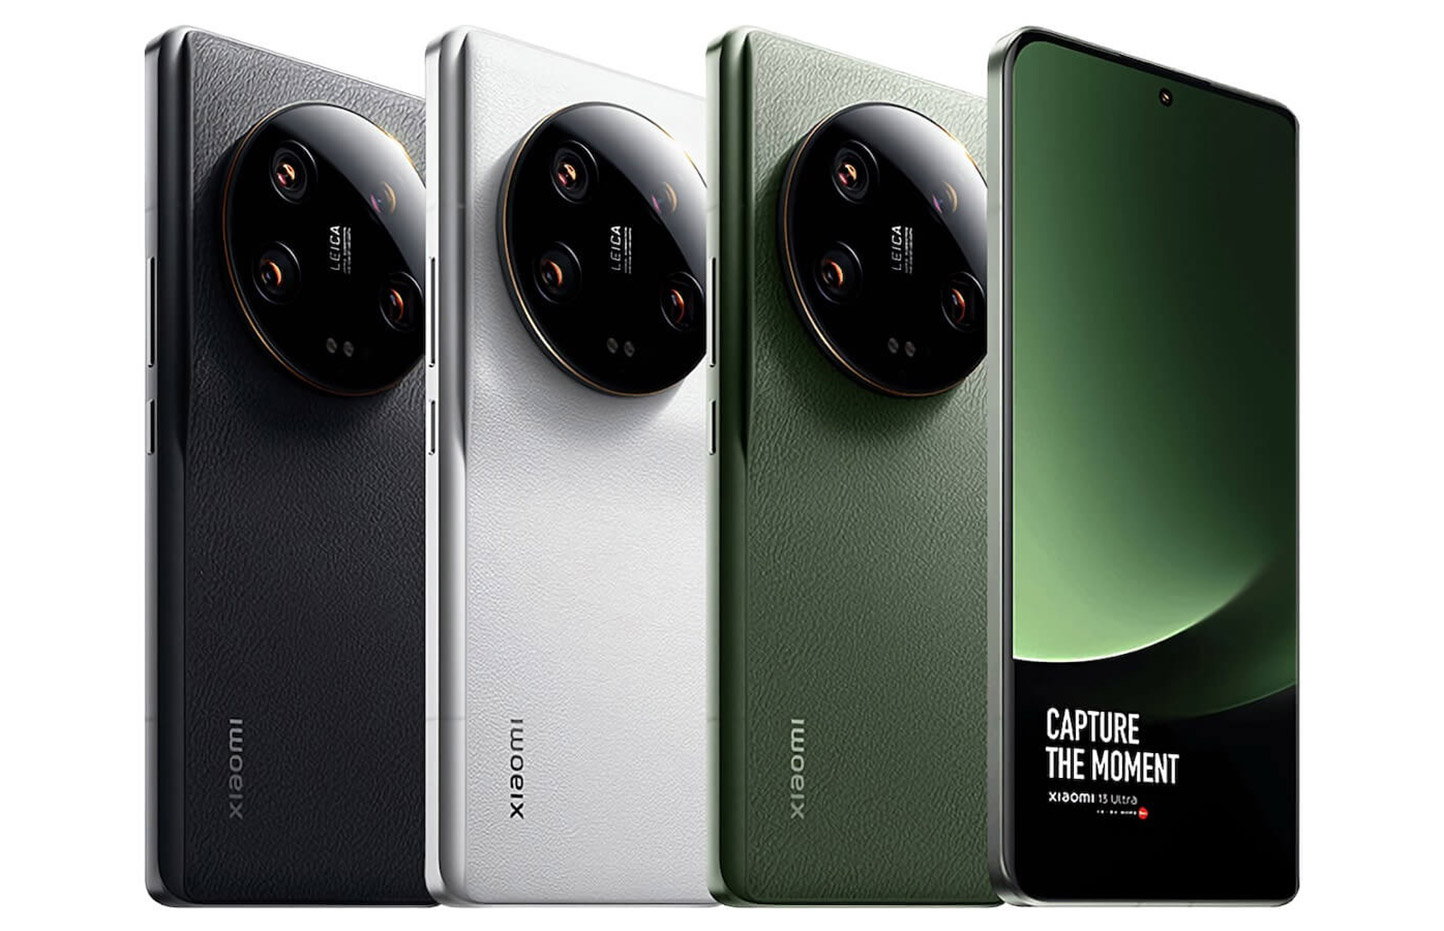 Новые флагманы Xiaomi будут использовать 1-дюймовый датчик камеры